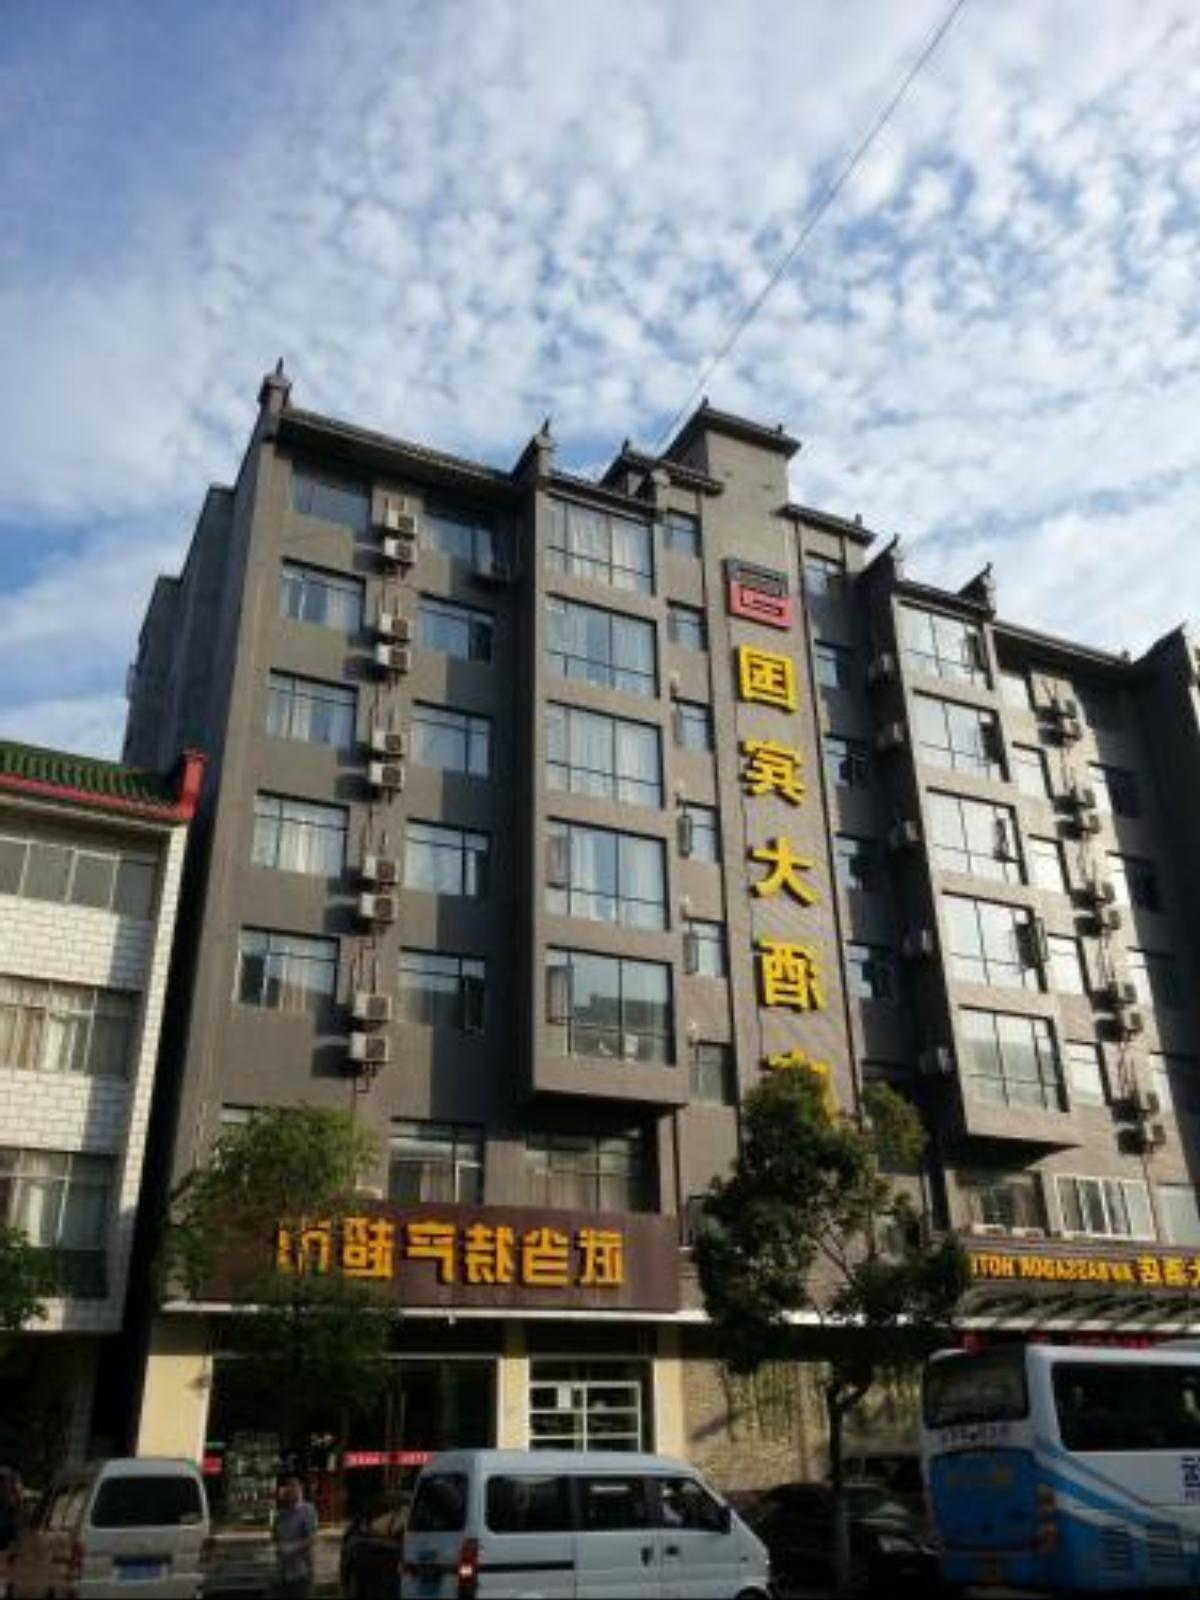 Wudangshan Guobin Hotel Hotel Danjangkou China